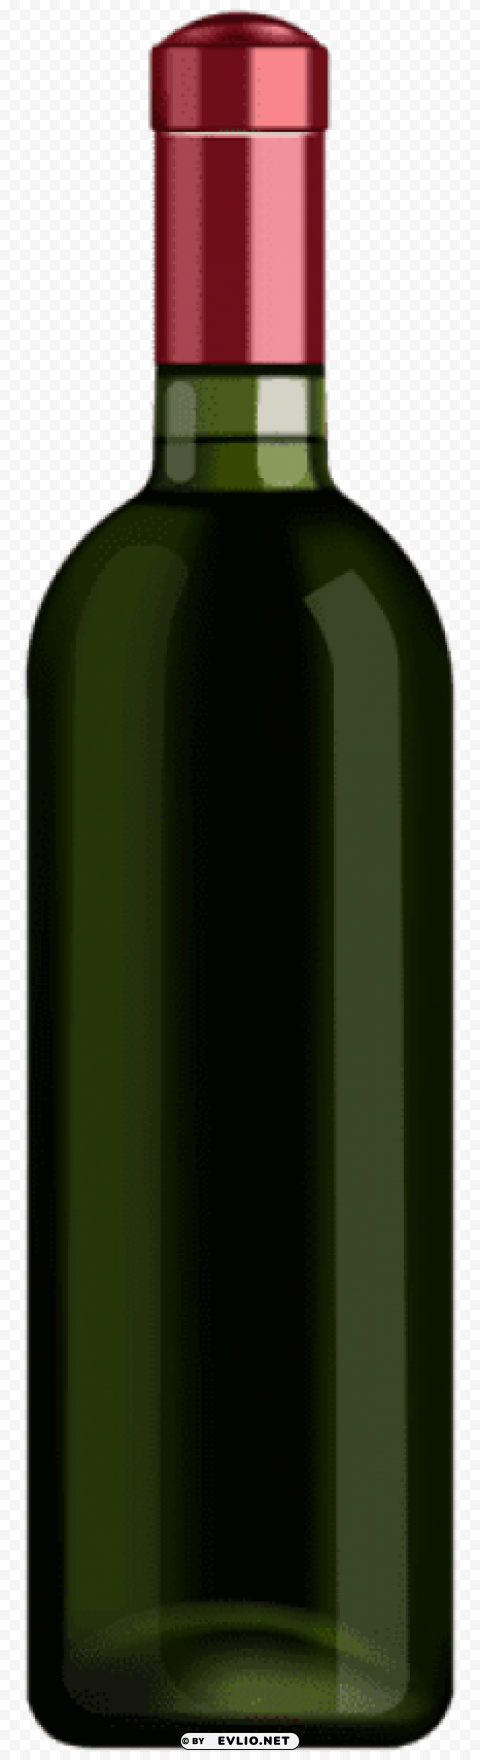 Wine Bottle Transparent PNG Images Set